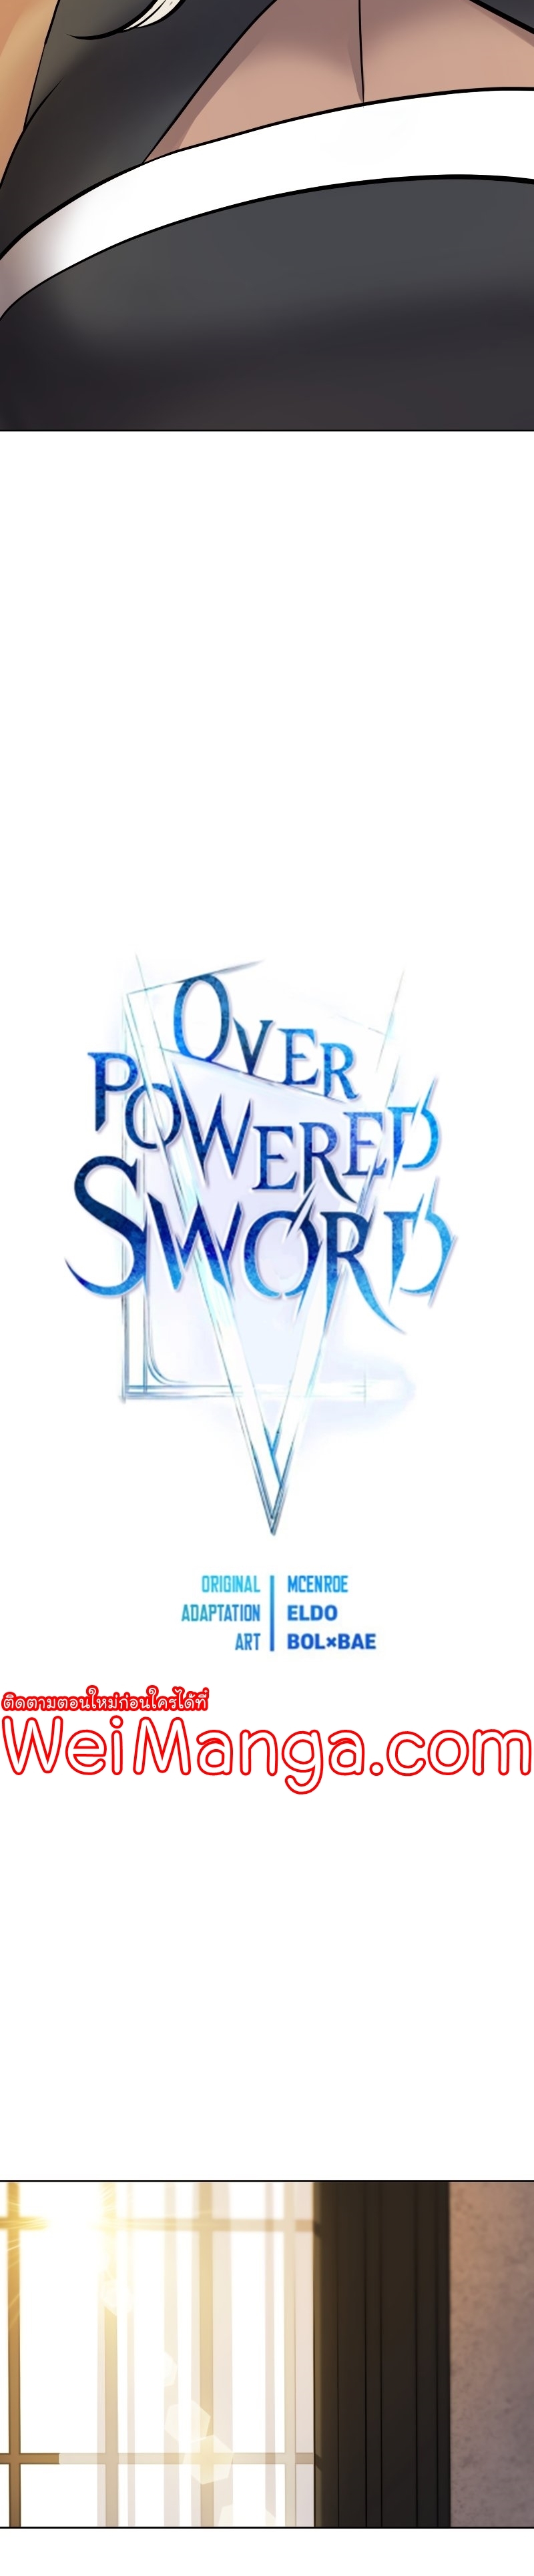 Overpowered Sword 44 03